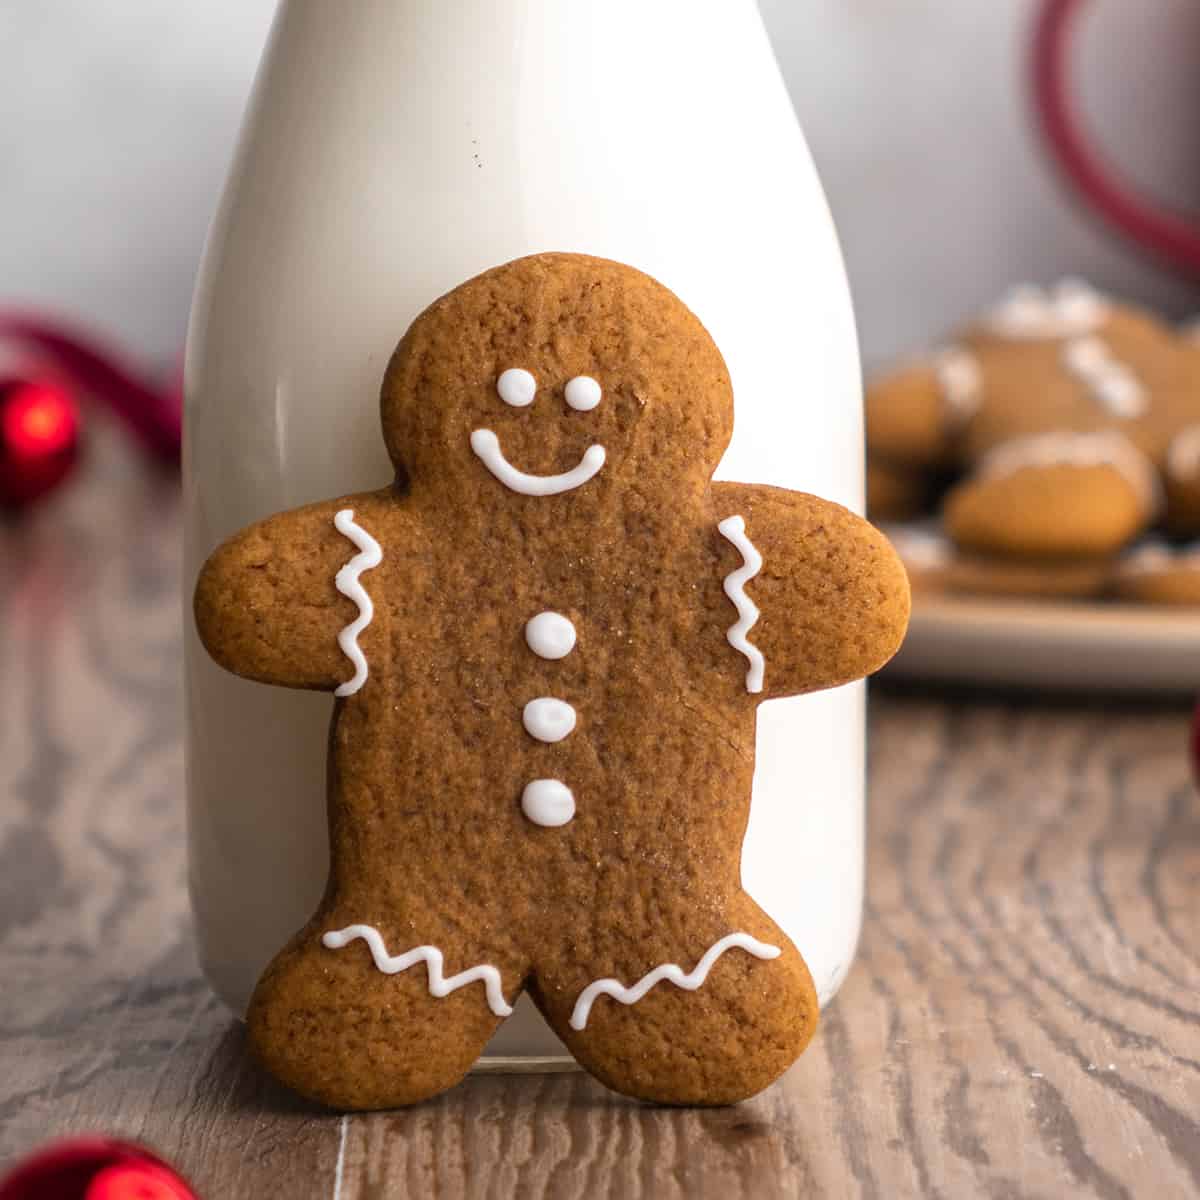 Best Christmas Cookies - gingerbread man